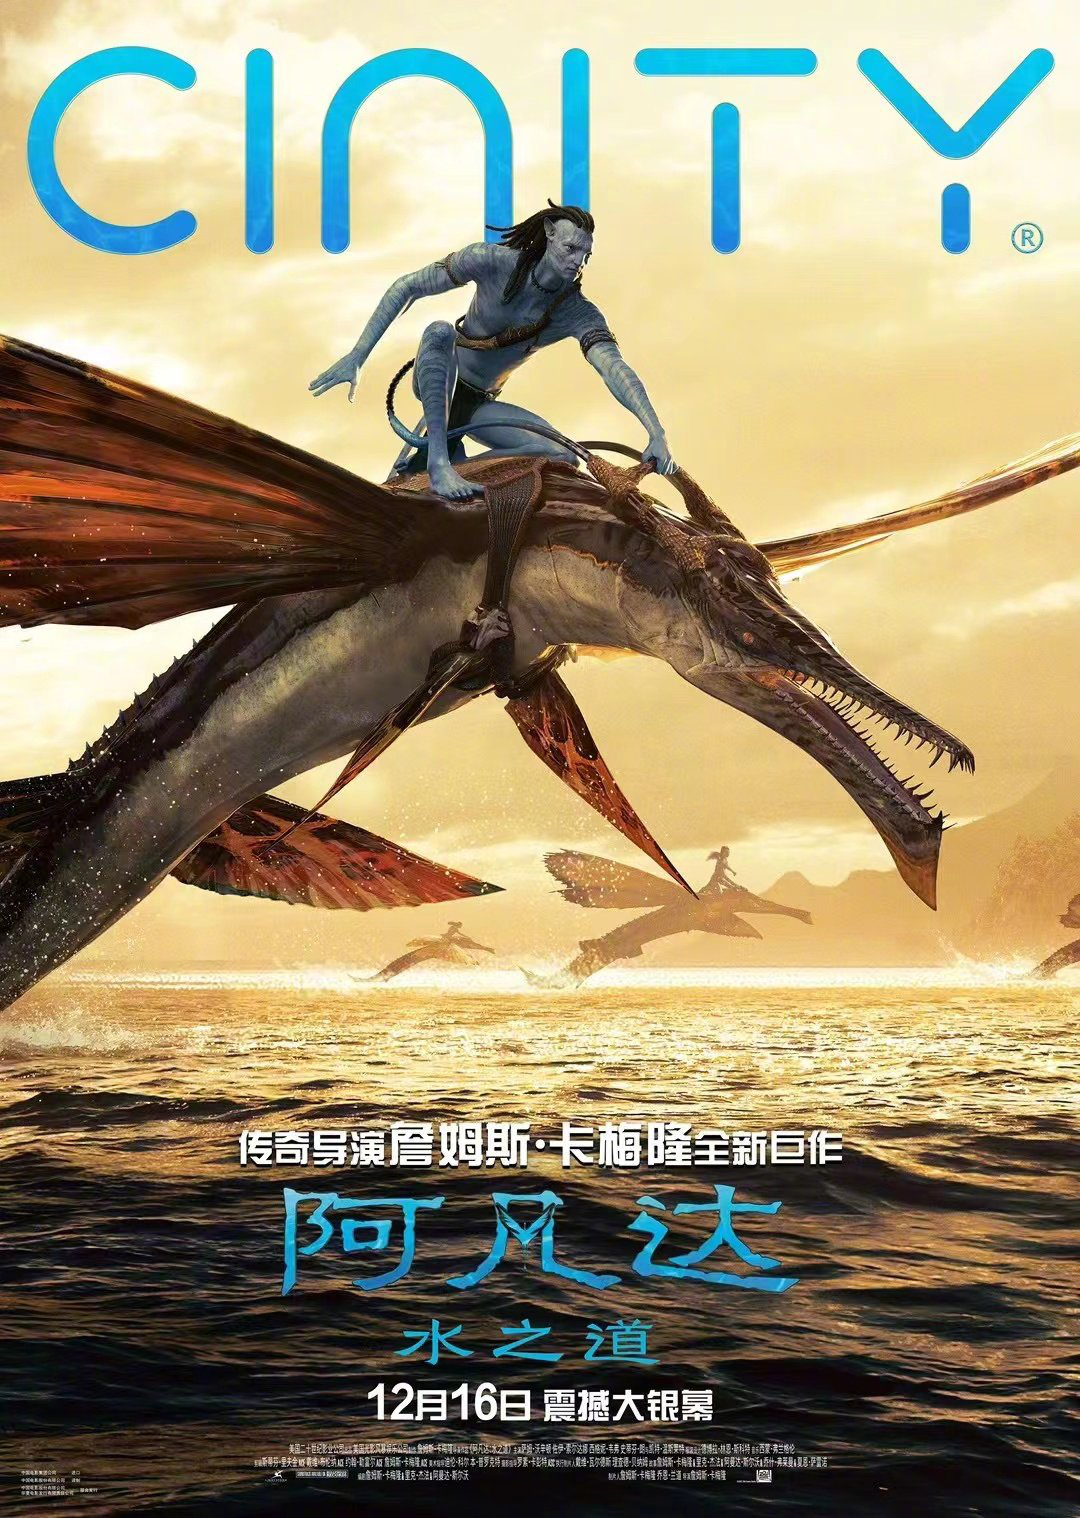 《阿凡达2》Cinity海报曝光 萨姆·沃辛顿骑鱼作战